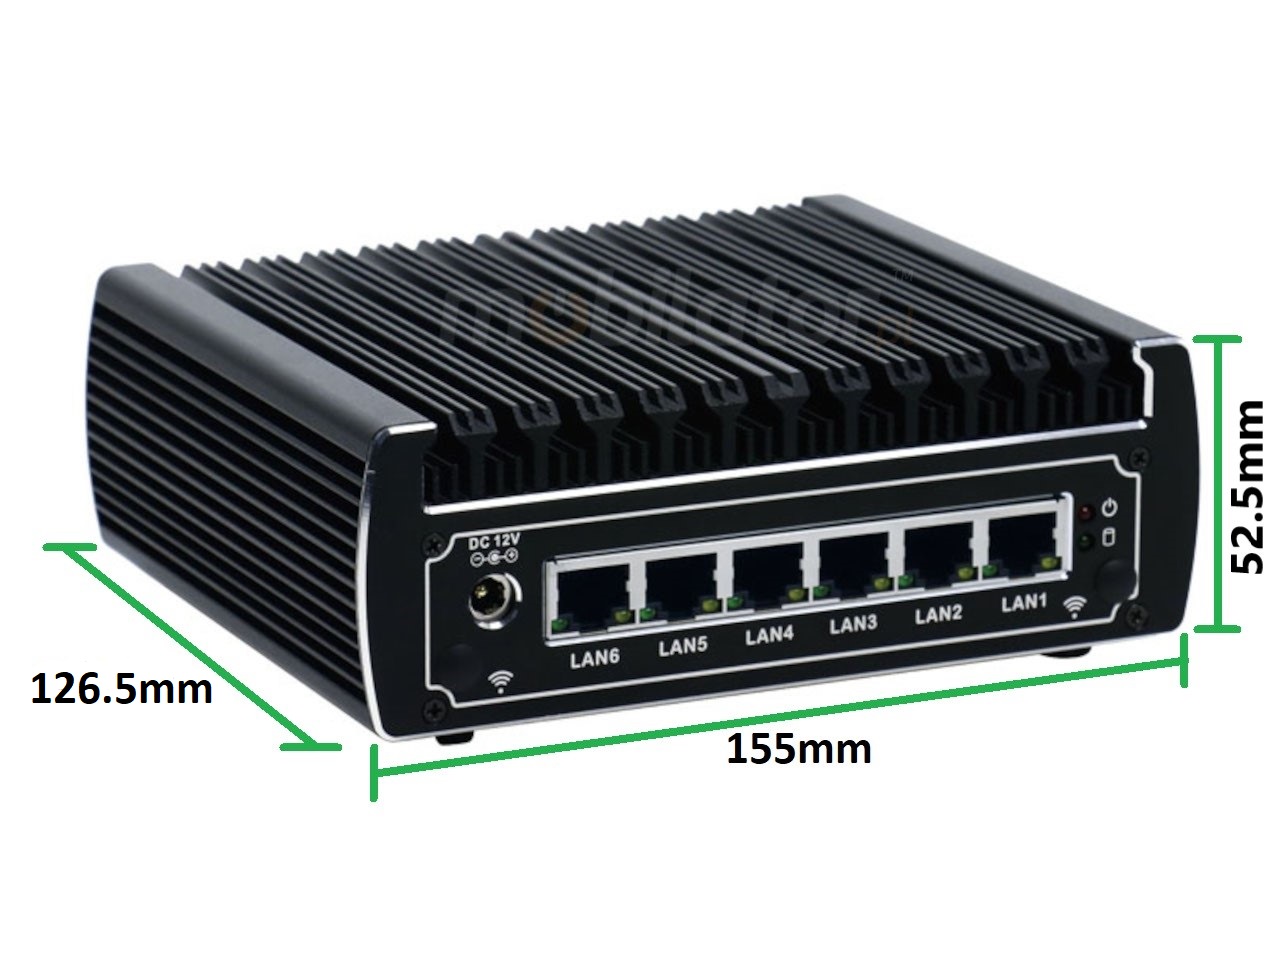   IBOX N133  v.13, wymiary HDD DDR4 , przemysłowy, mały, szybki, niezawodny, fanless, industrial, small, LAN, INTEL i3